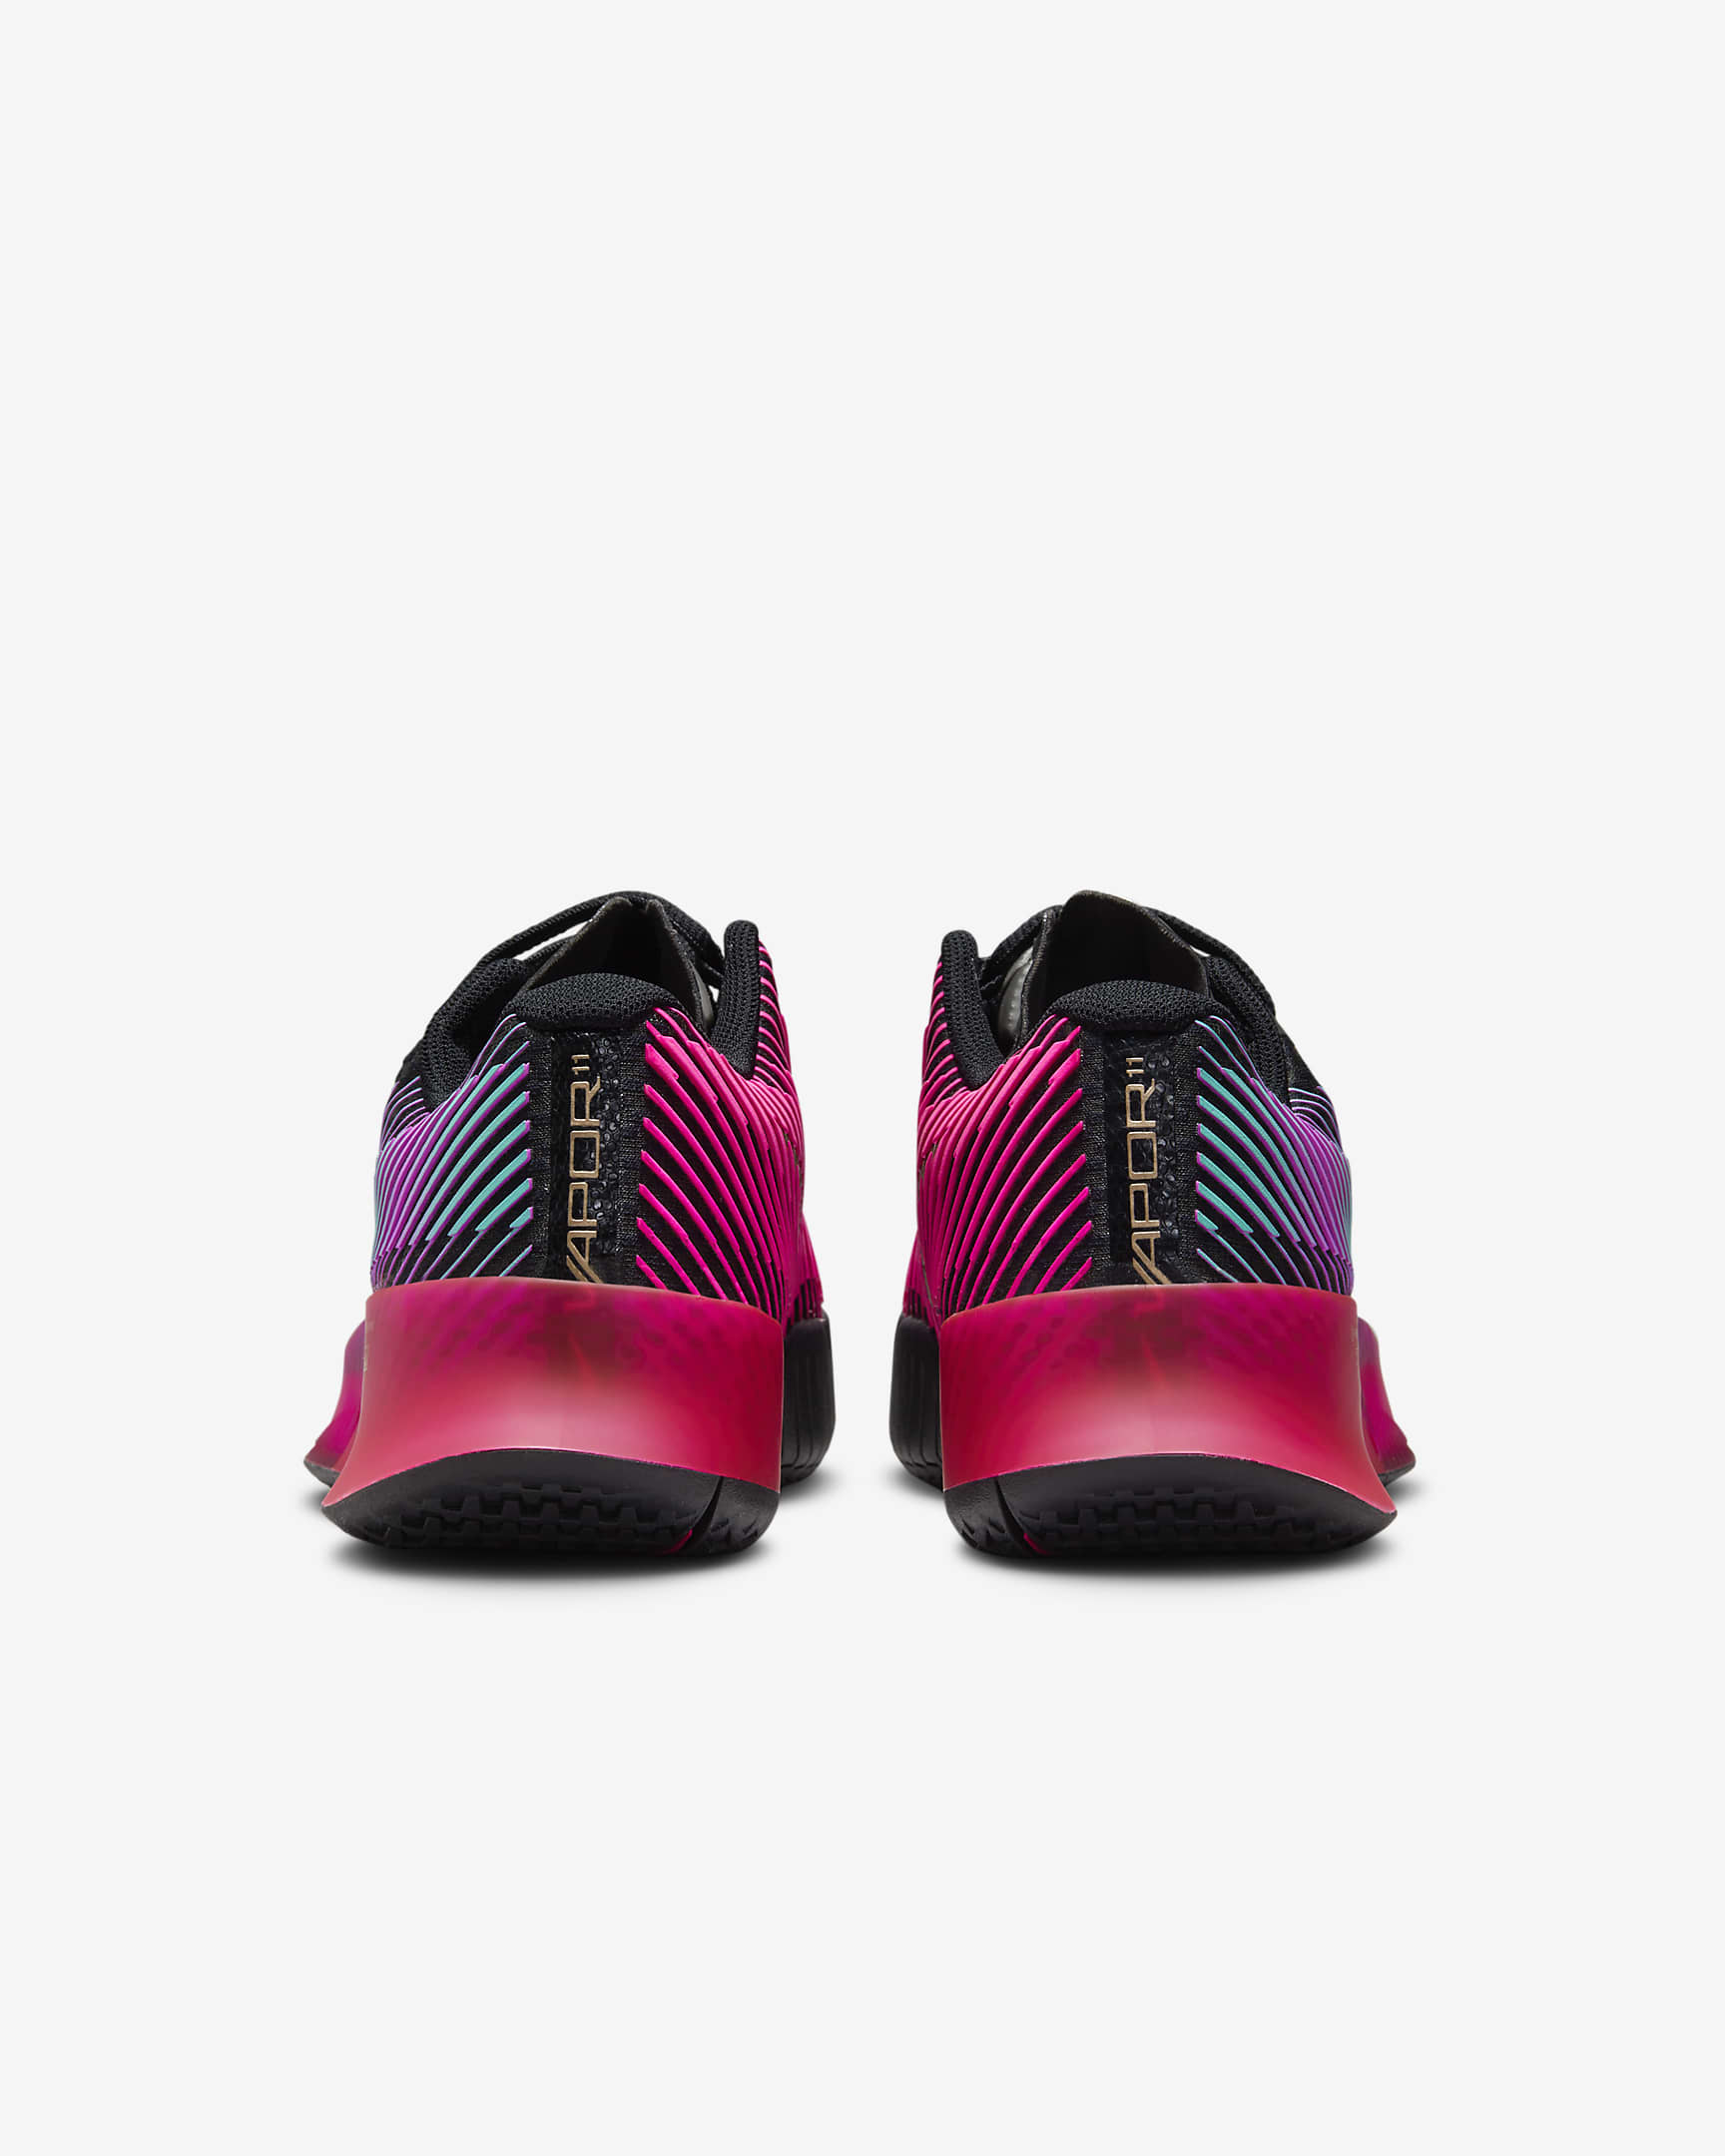 Calzado de tenis para cancha dura NikeCourt Air Zoom Vapor 11 Premium ...